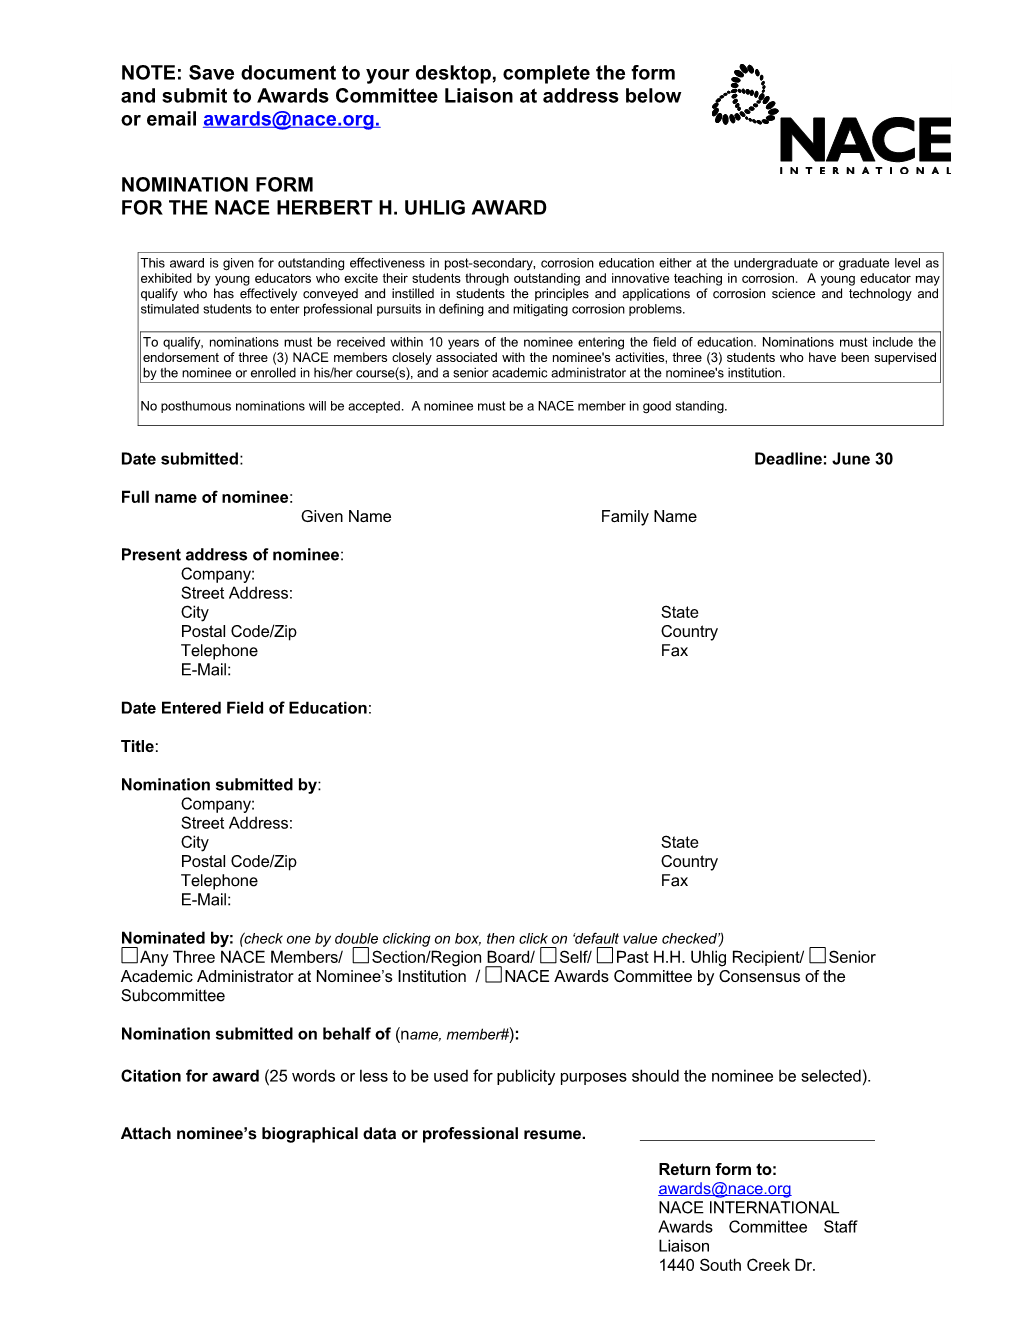 Nomination Form for the Nace Herbert H. Uhlig Award